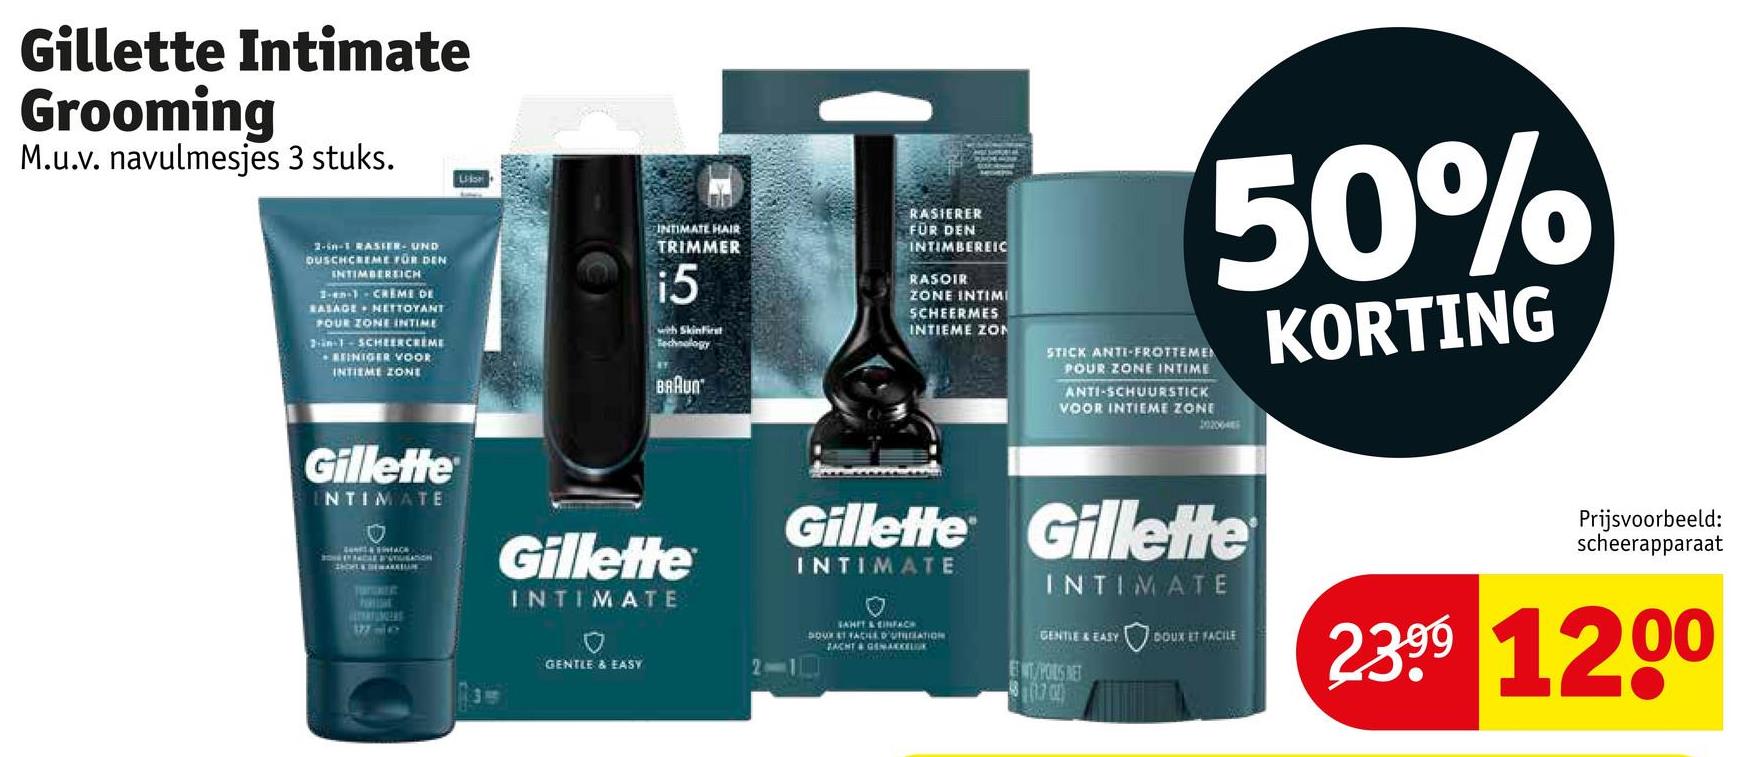 Gillette Intimate
Grooming
M.u.v. navulmesjes 3 stuks.
Lis
2-in-1 RASIER- UND
DUSCHCREME FÜR DEN
INTIMBEREICH
1-en-1- CREME DE
RASAGE NETTOYANT
POUR ZONE INTIME
2-in-1-SCHEERCREME
REINIGER VOOR
INTIEME ZONE
INTIMATE HAIR
TRIMMER
i5
with SkinFirst
Technology
BRAUN
RASIERER
FÜR DEN
INTIMBEREIC
RASOIR
ZONE INTIMI
SCHEERMES
INTIEME ZON
50%
STICK ANTI-FROTTEMEN
POUR ZONE INTIME
ANTI-SCHUURSTICK
VOOR INTIEME ZONE
KORTING
Gillette
NTIMATE
AC
CAR PUTUSATION
SHOWER THE MARKLUN
TOGALE
htt
Gillette
INTIMATE
Gillette Gillette
INTIMATE
INTIMATE
Prijsvoorbeeld:
scheerapparaat
GENTLE & EASY
SAHIT & EINFACH
DOUR ET FACILE D'UTILATION
ZACHT & GEMAKKELOK
GENTLE & EASY
DOUX ET FACILE
WIT/POILS NET
8.70
2399 1200